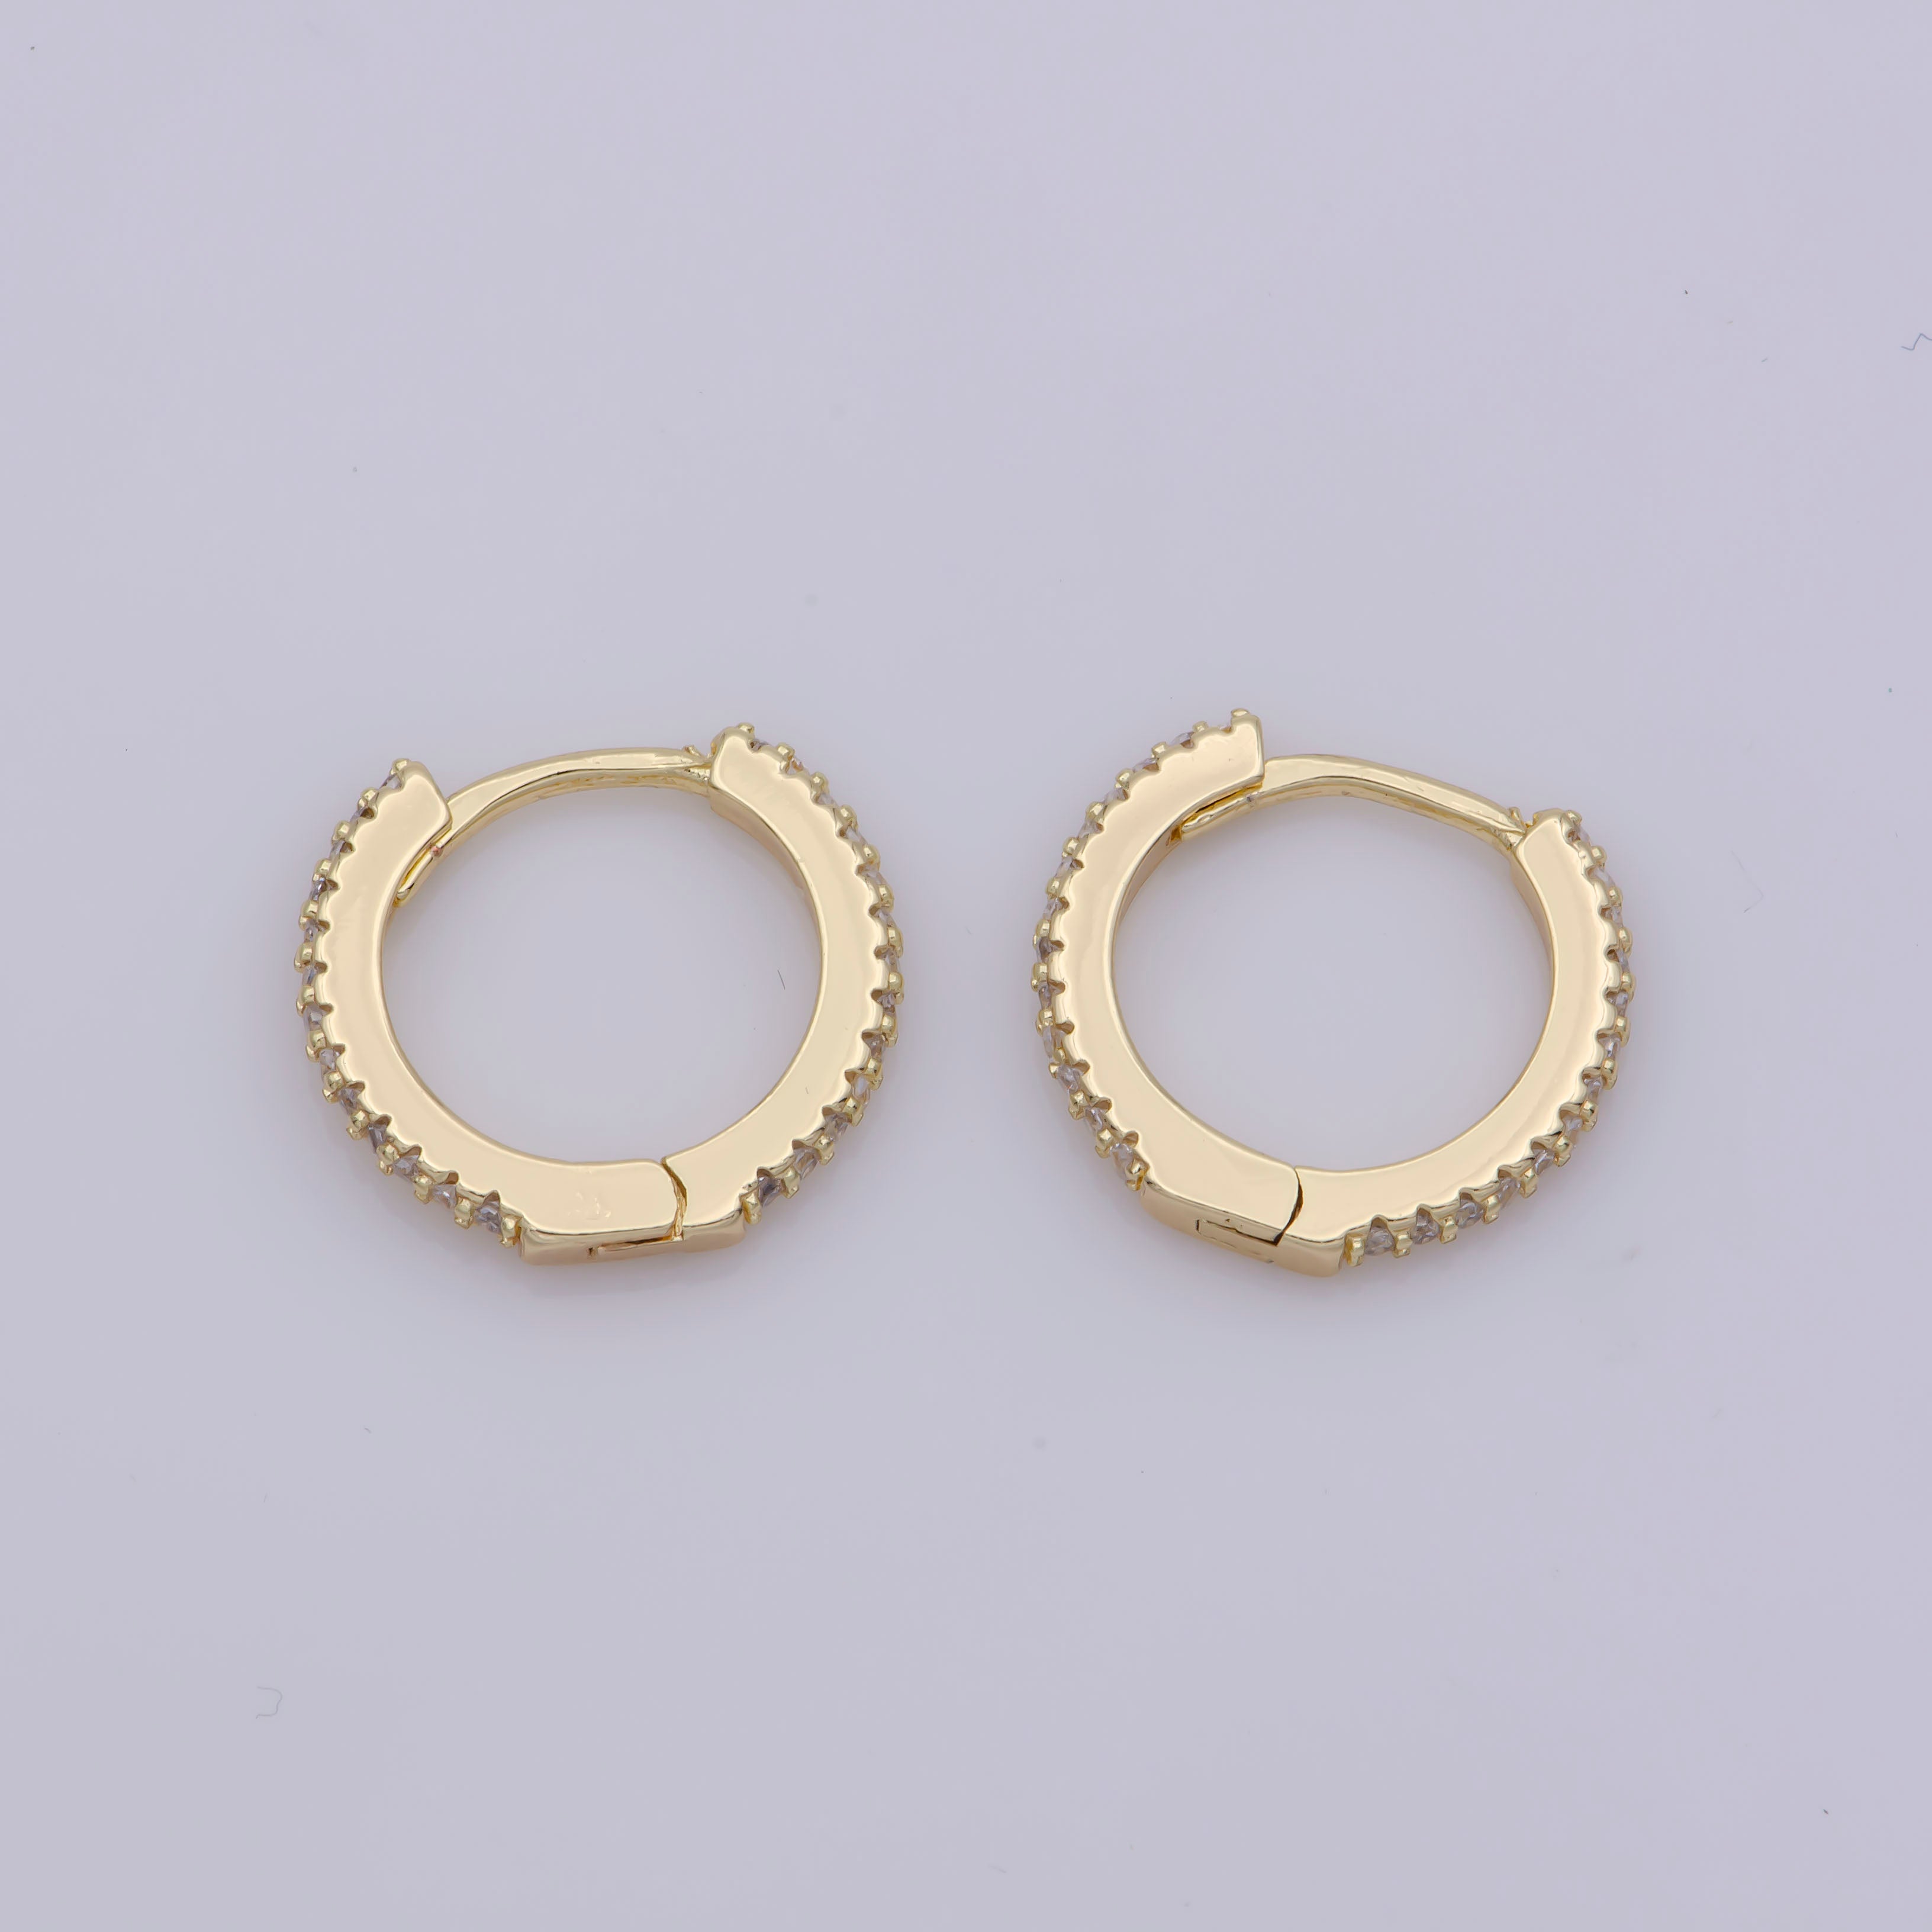 24K Gold Filled Huggie Hoop Earrings, Crystal Cubic Zirconia CZ Encrusted on 14.8X13.3mm Hoops, Minimalist Modern 15mm Huggie Hoops - DLUXCA